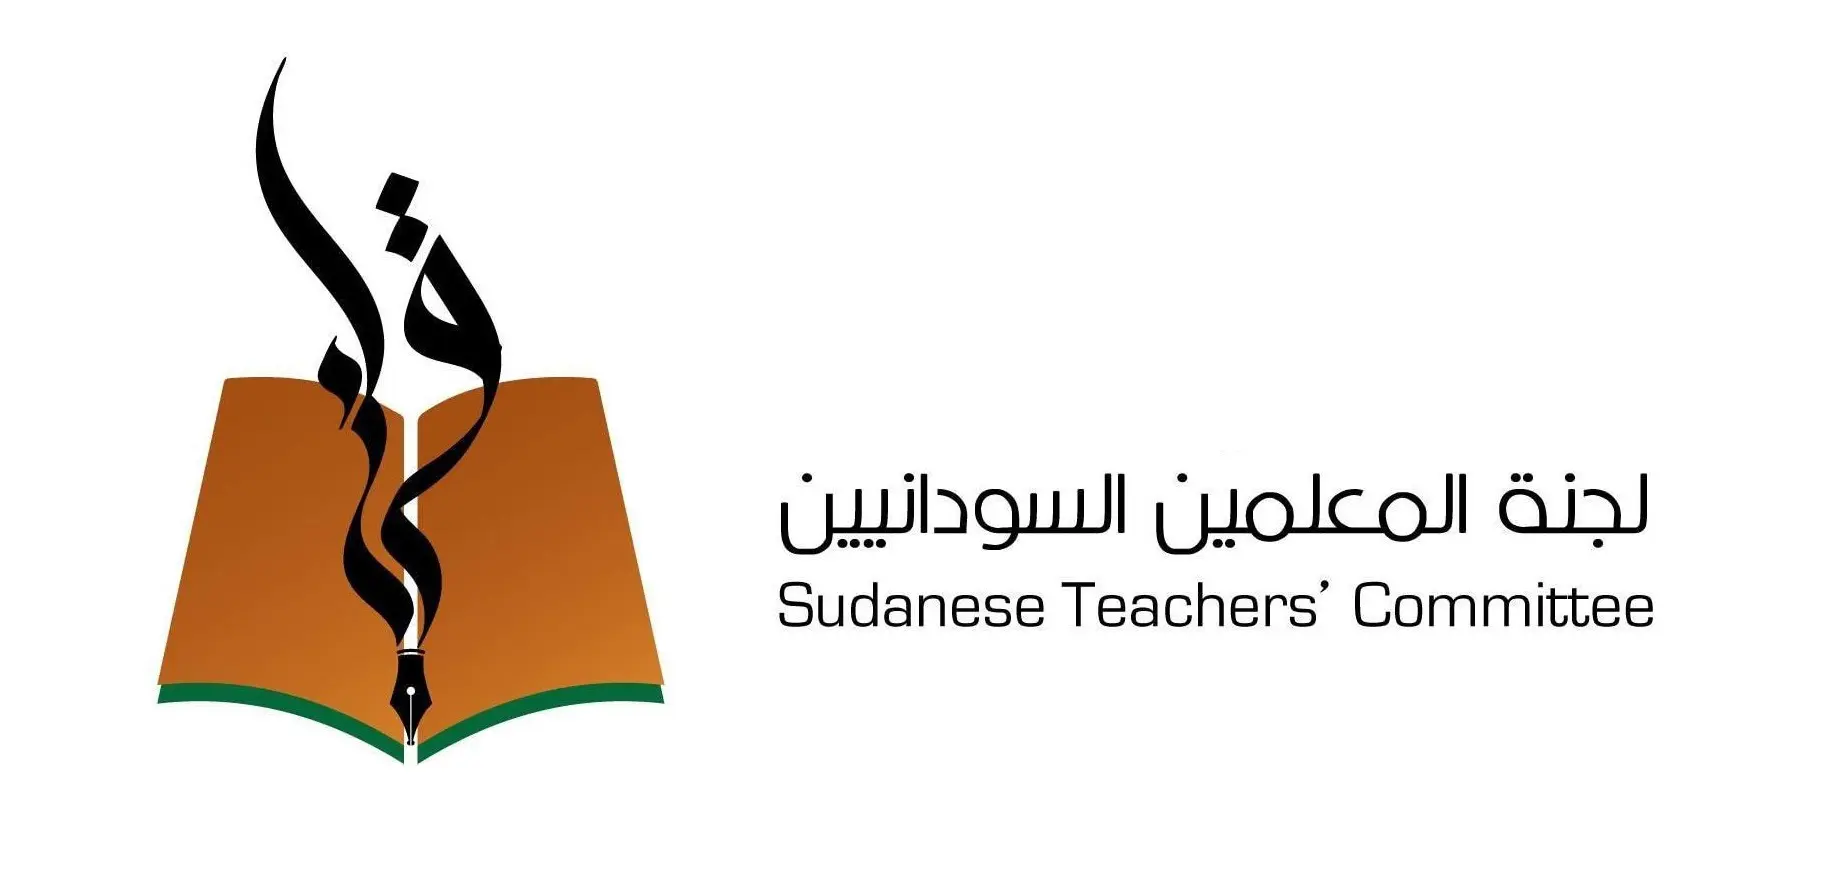 Une nouvelle campagne d’arrestation visant des enseignants dans 3 États soudanais